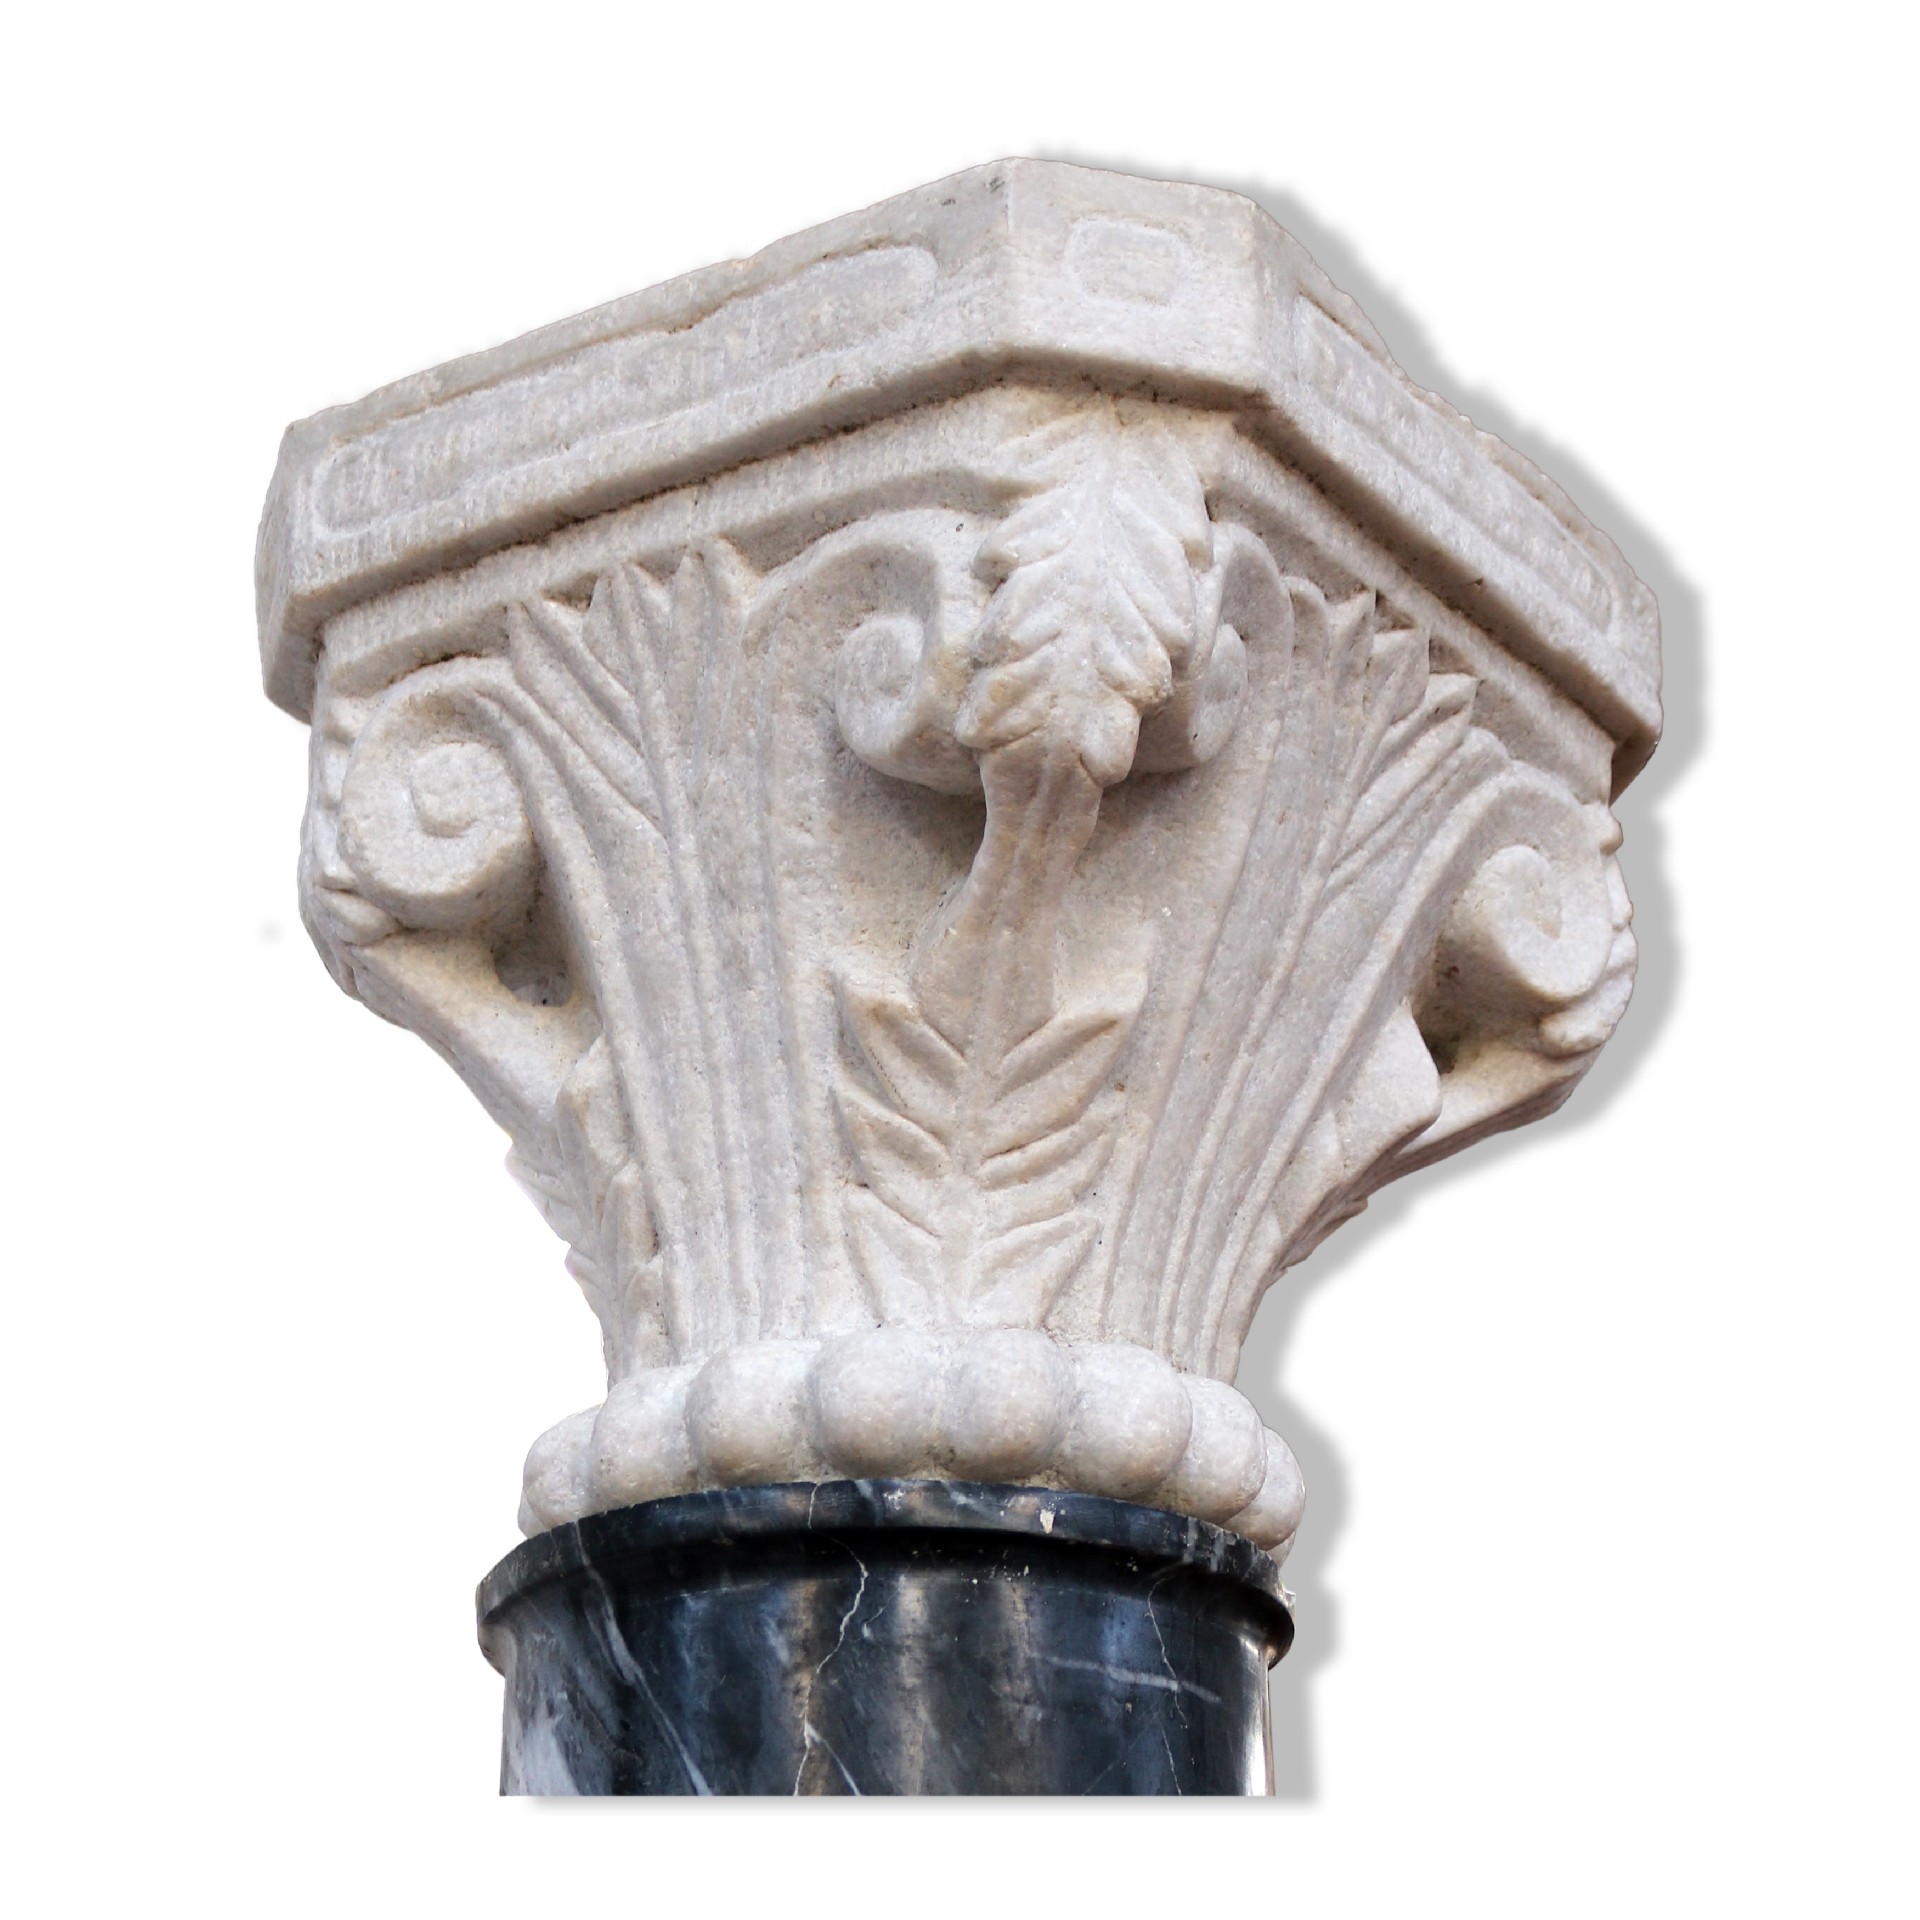 Antico capitello in marmo. - Capitelli basi per colonne - Architettura - Prodotti - Antichità Fiorillo